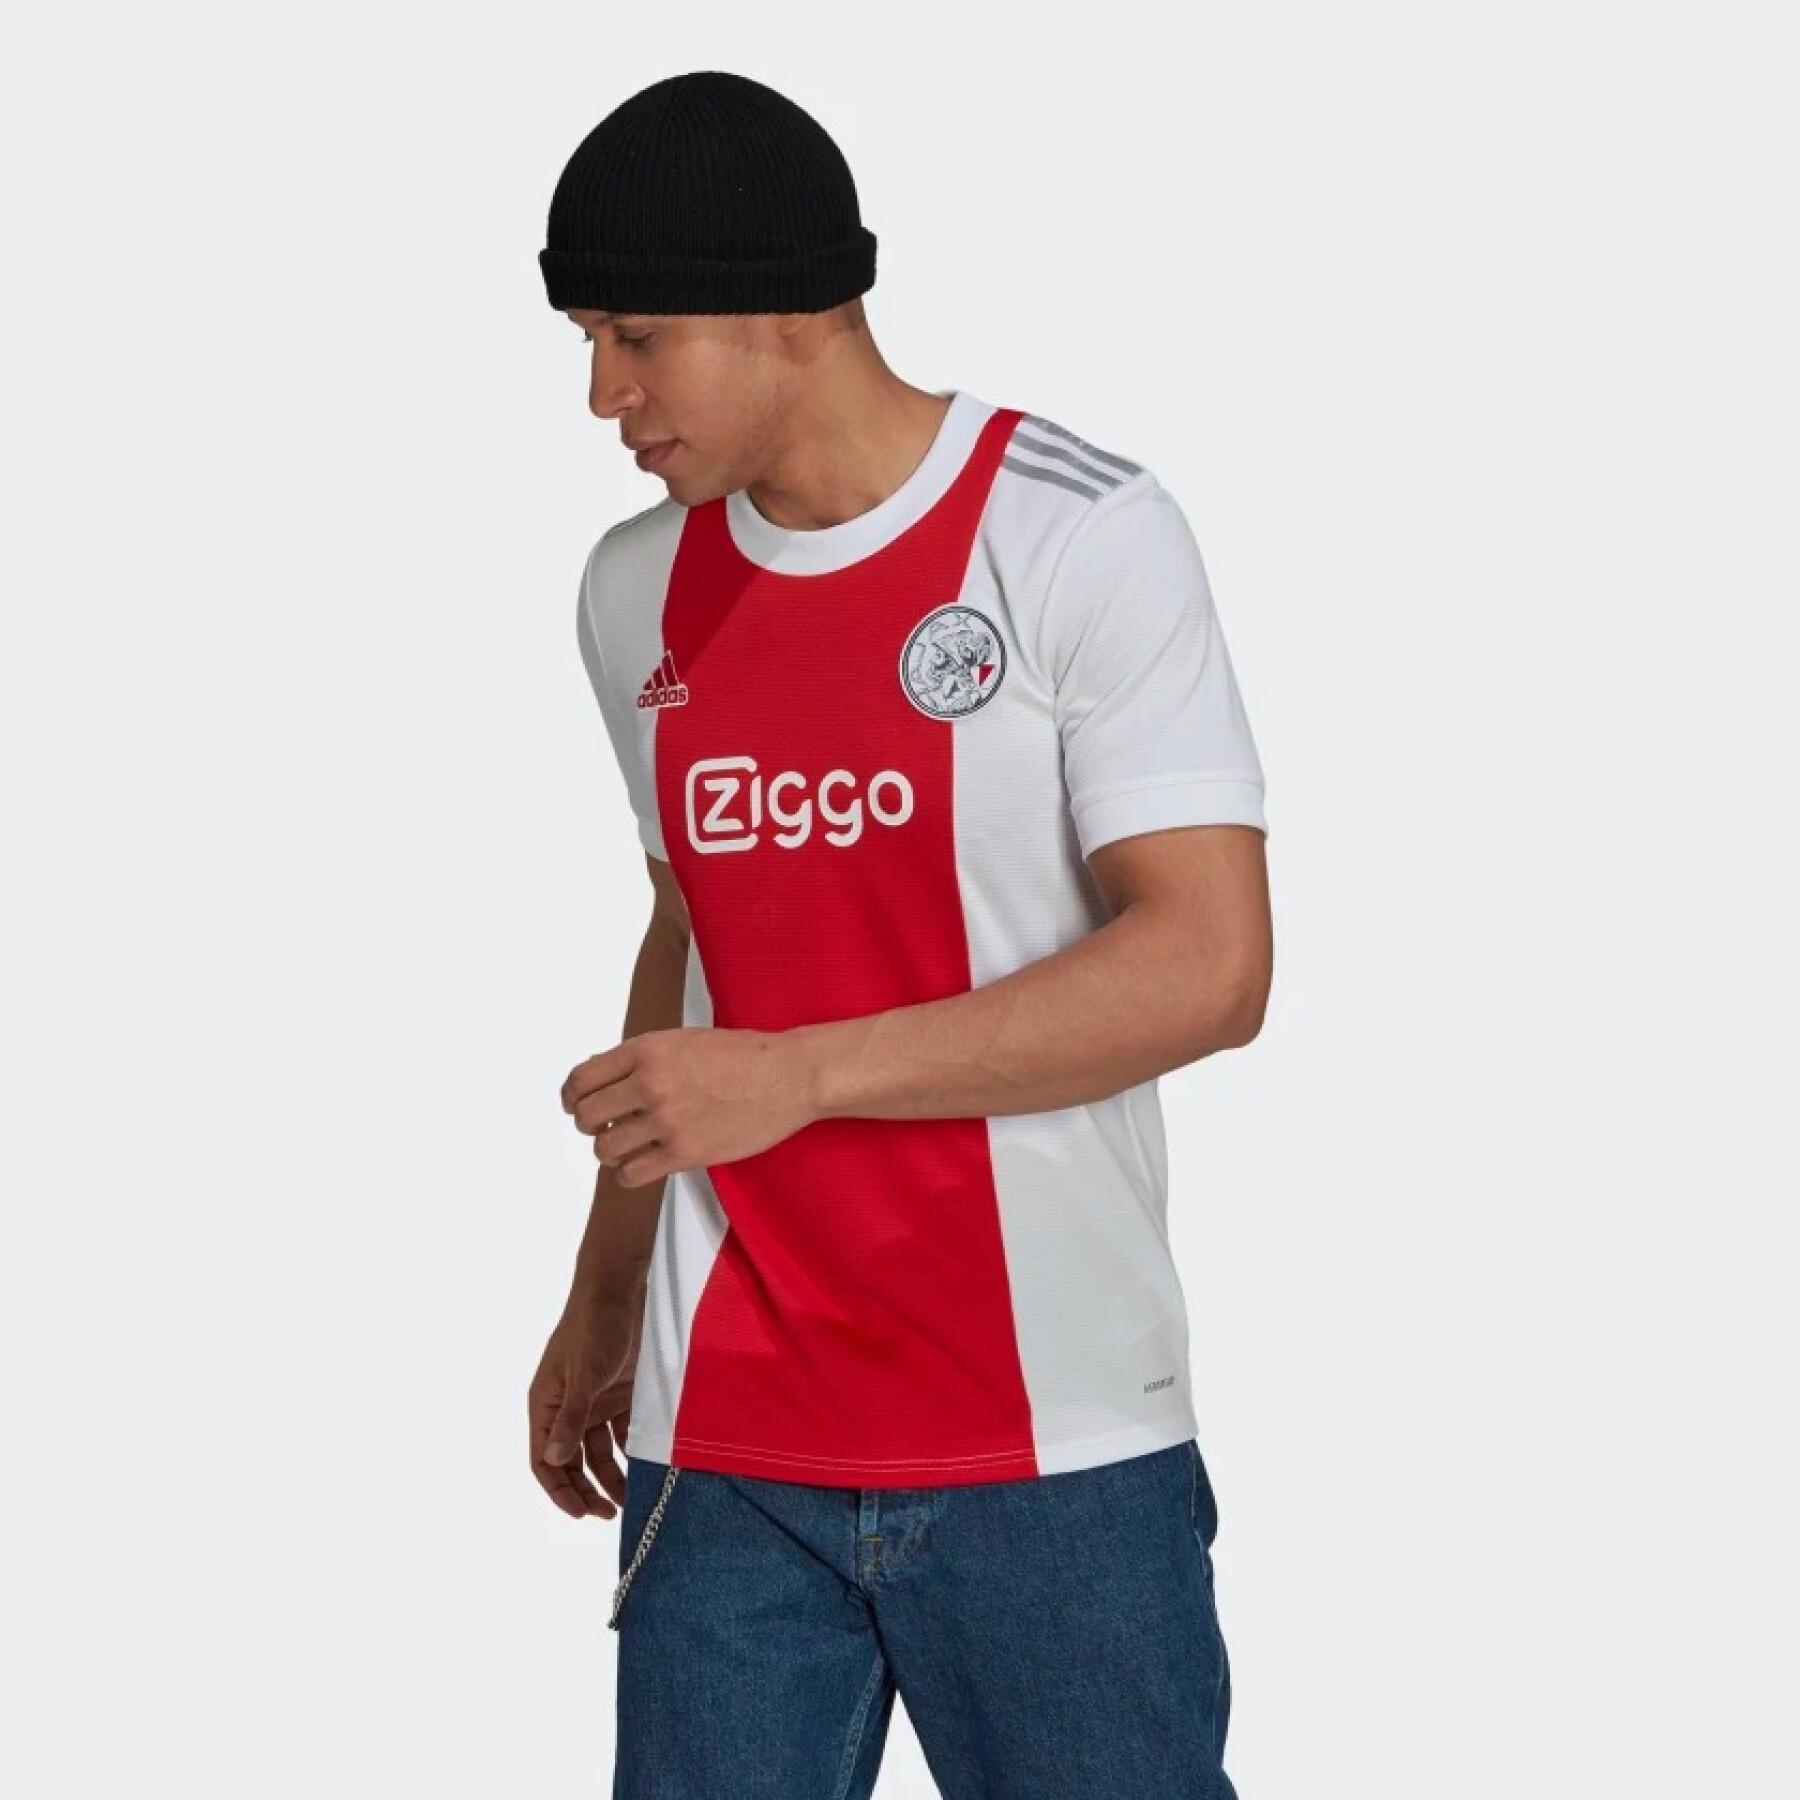 Maglia Home Ajax Amsterdam 2021/22